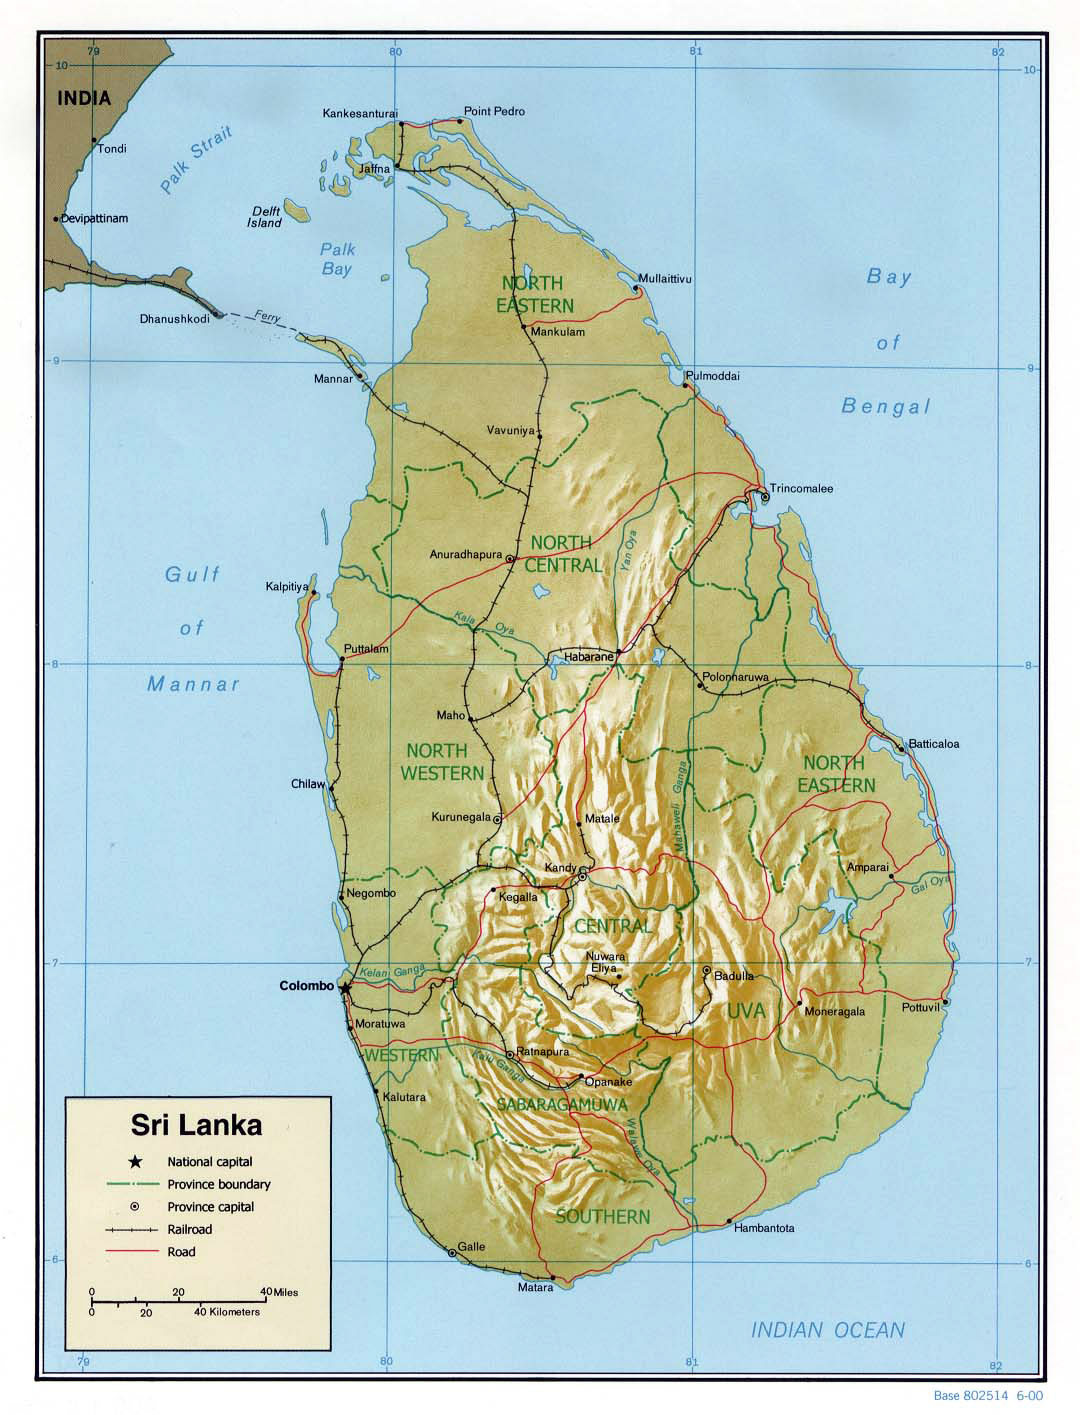 Maps Of Sri Lanka Detailed Map Of Sri Lanka In English Tourist Map Of Sri Lanka Road Map